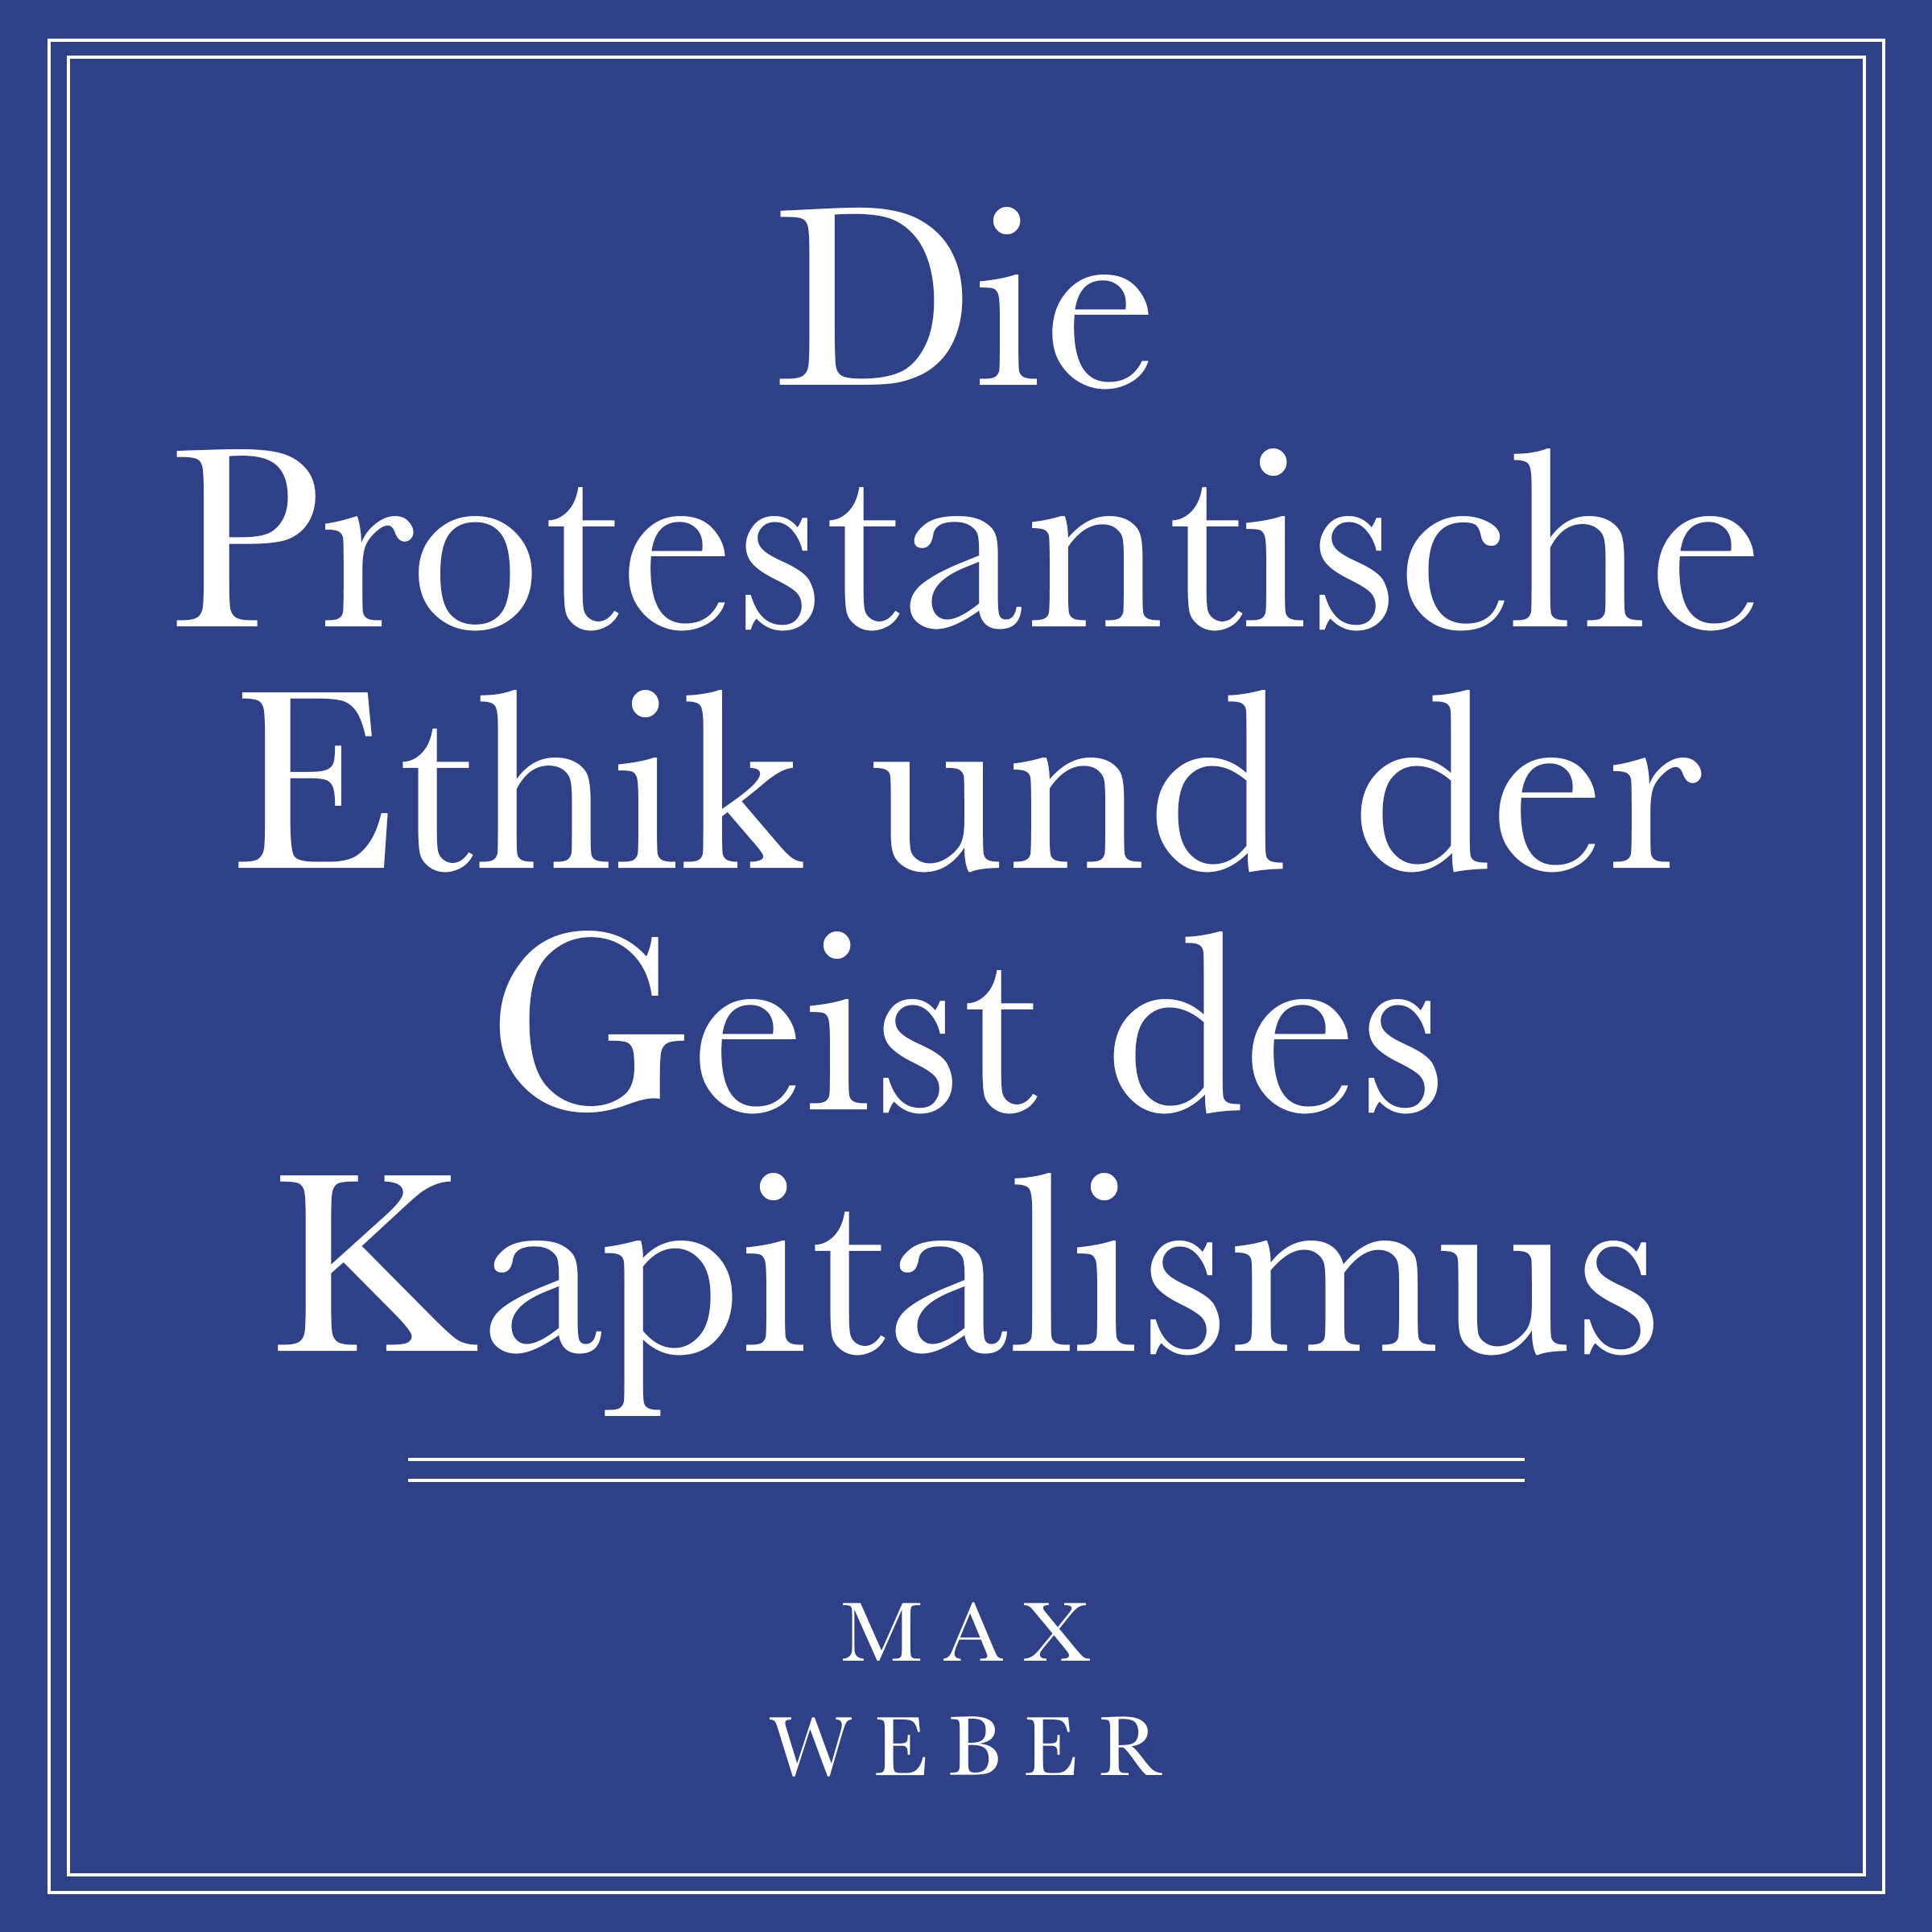 Die protestantische Ethik und der Geist des Kapitalismus by Max Weber Audiobook